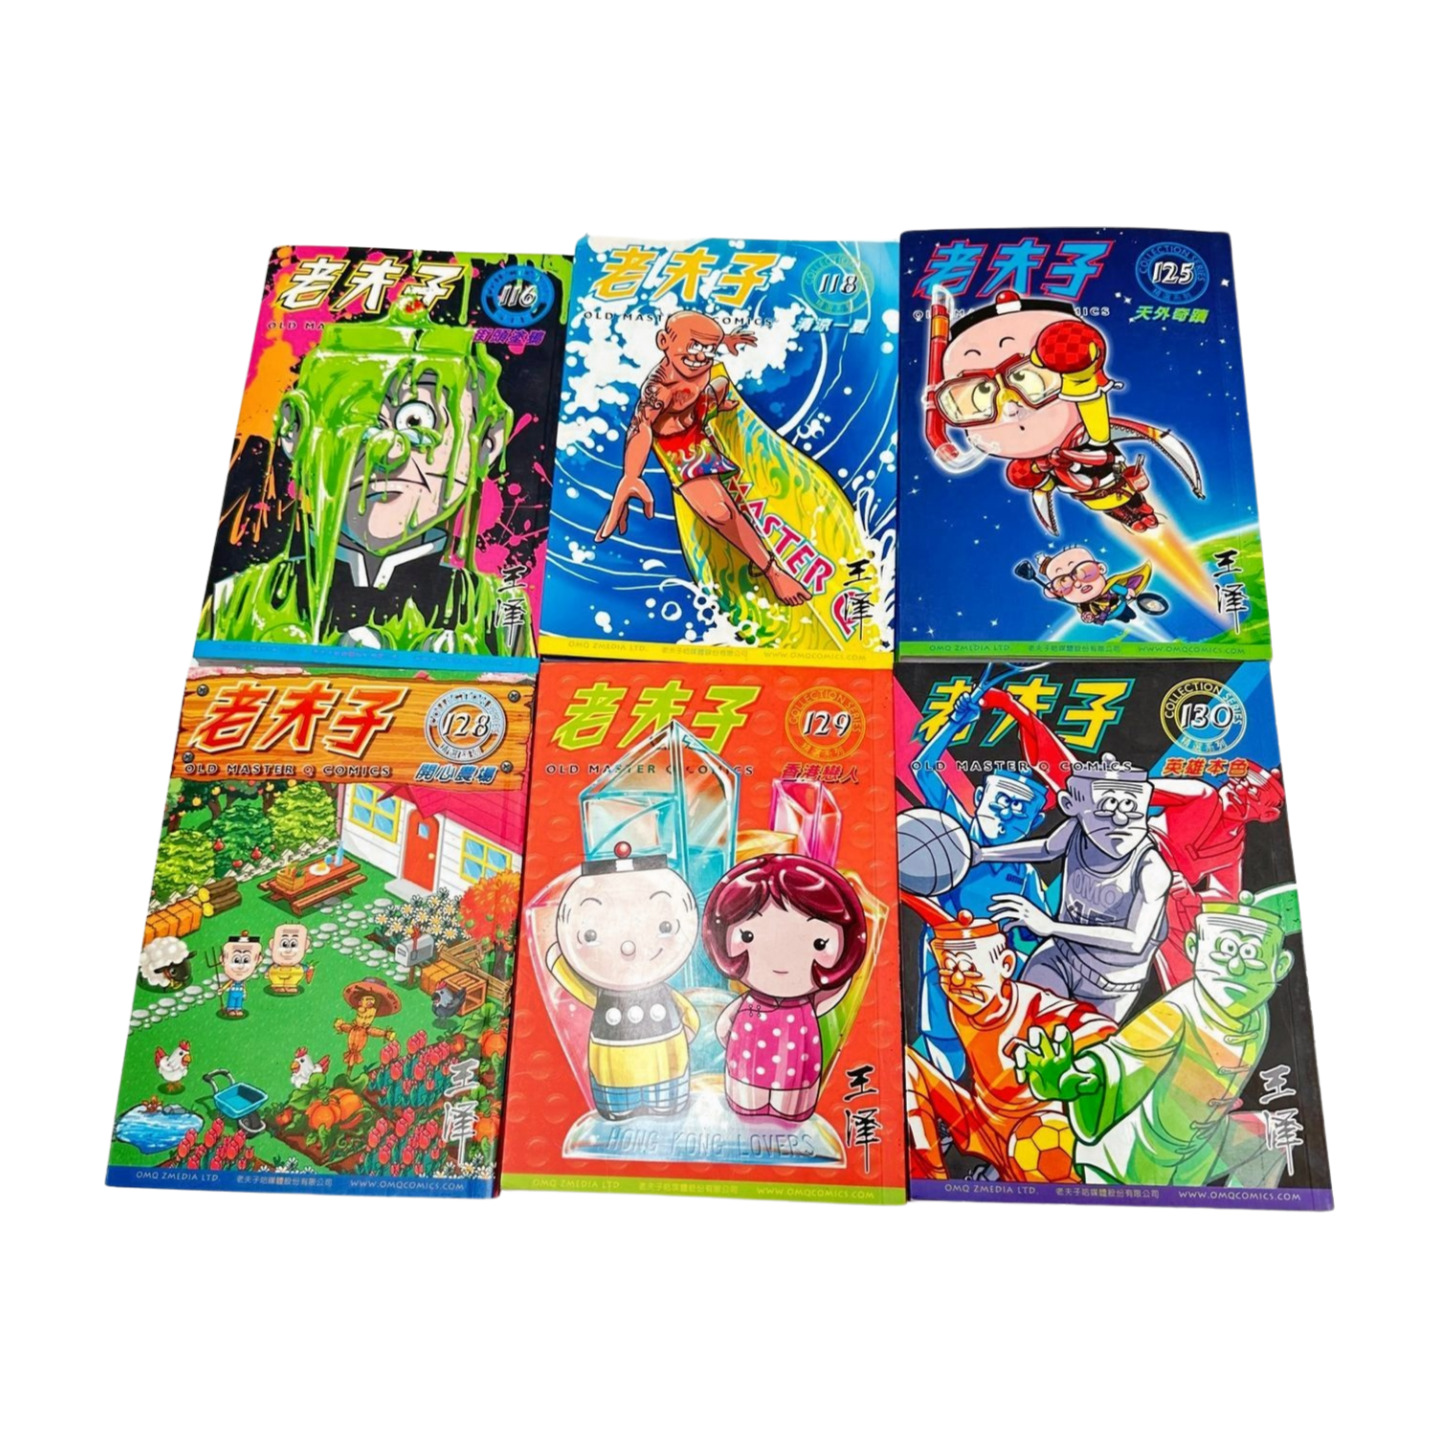 Old Master Q Comics Manga Graphic Novel Lot 6 Vol 116 118 125 128 129 130